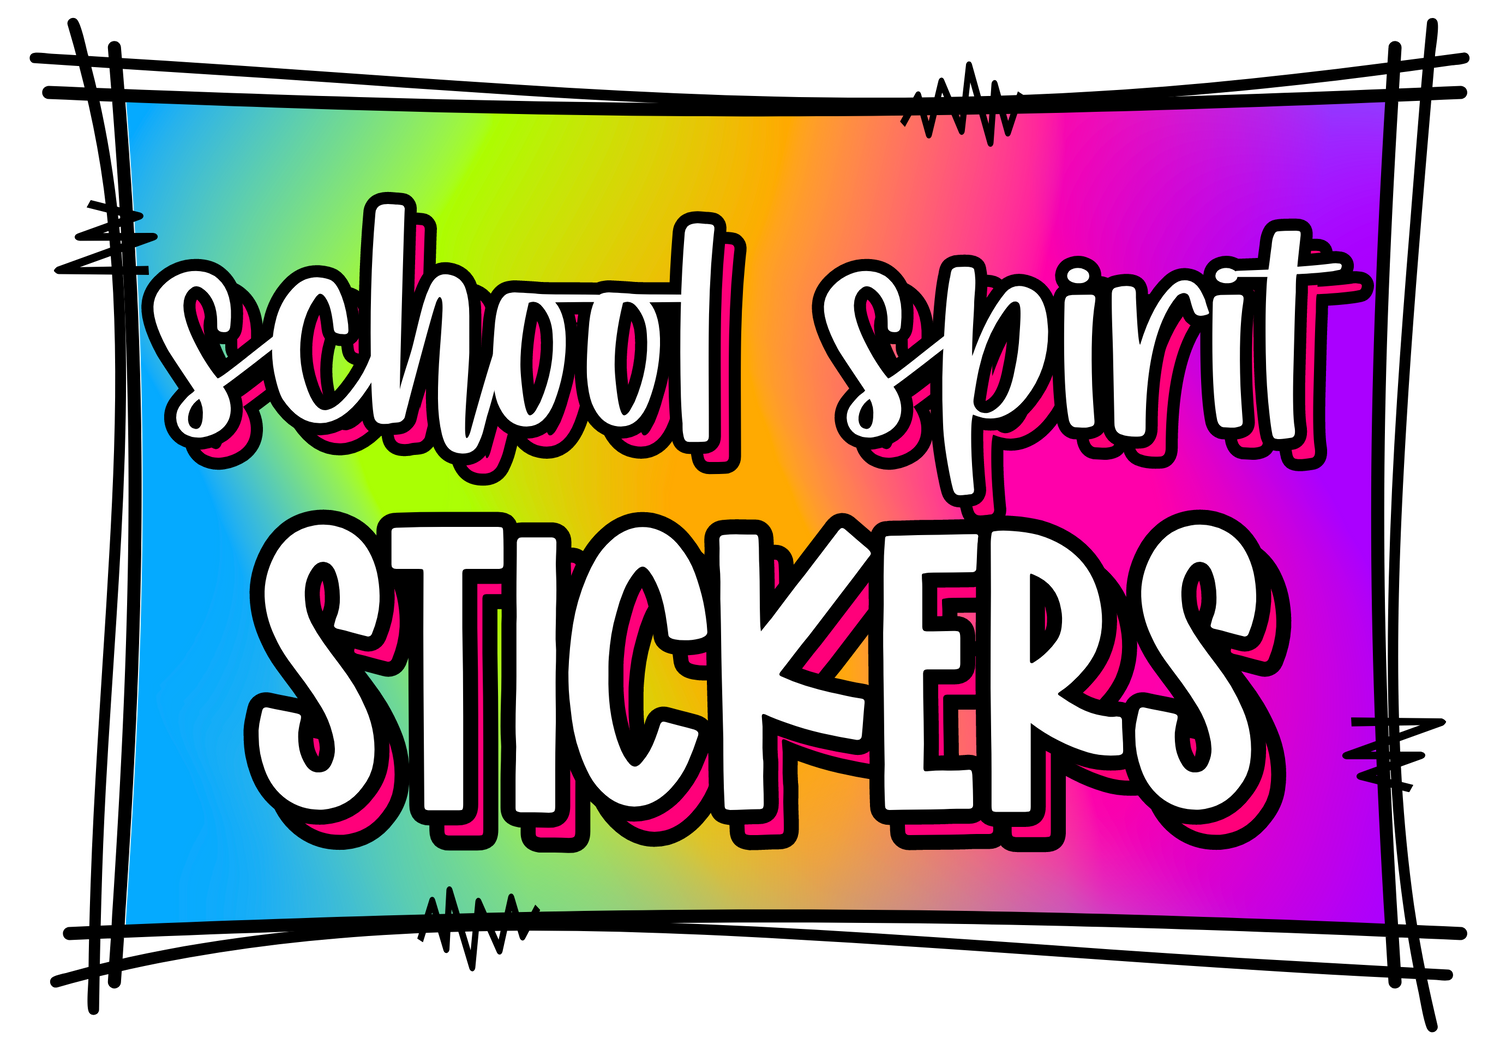 School Spirit Stickers